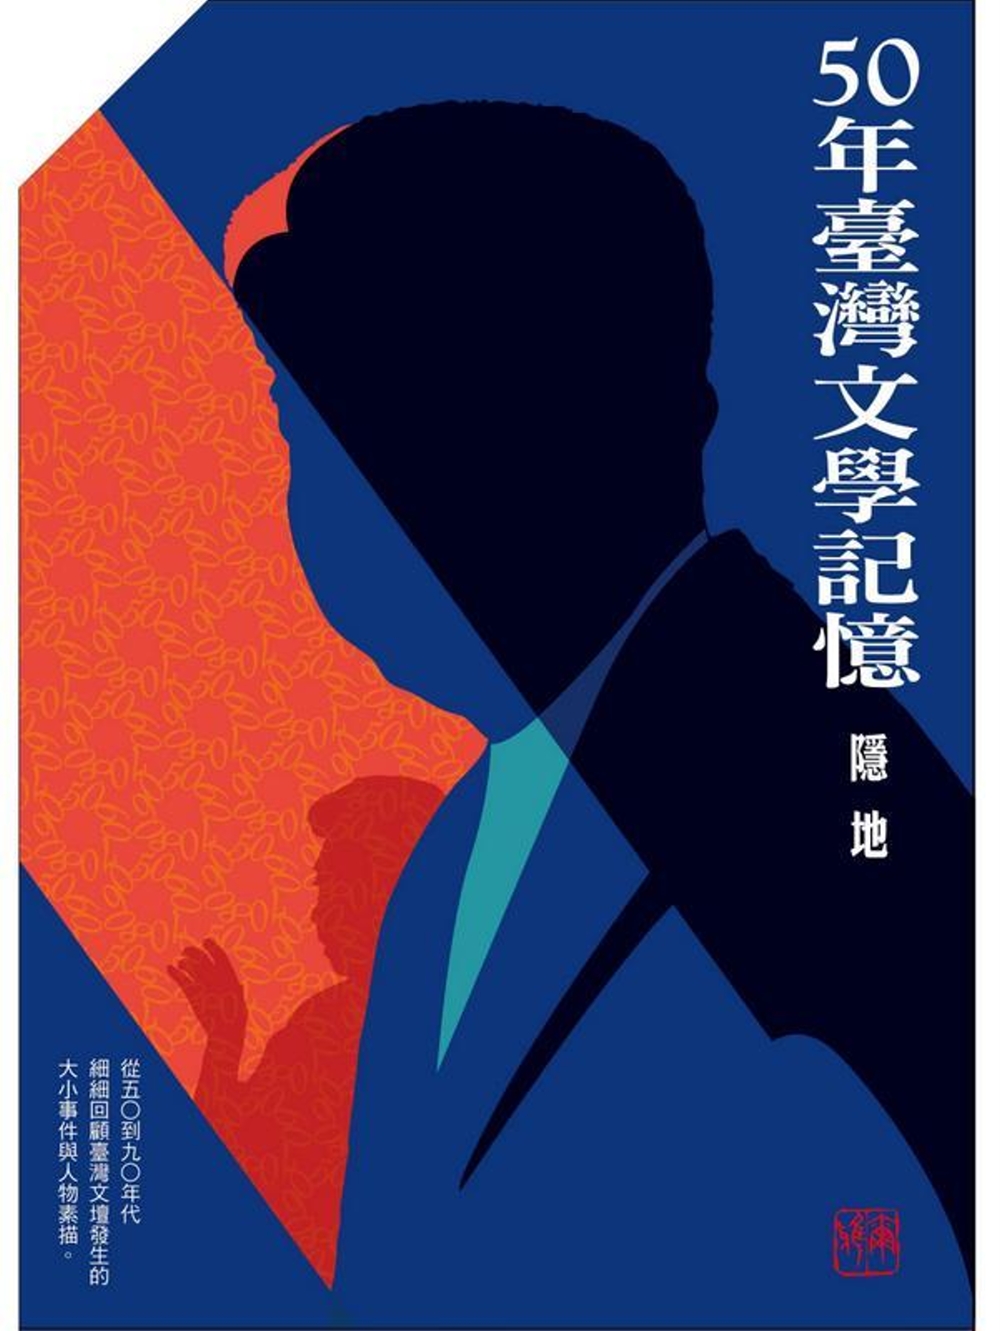 五十年台灣文學記憶 年代五書限量盒裝版